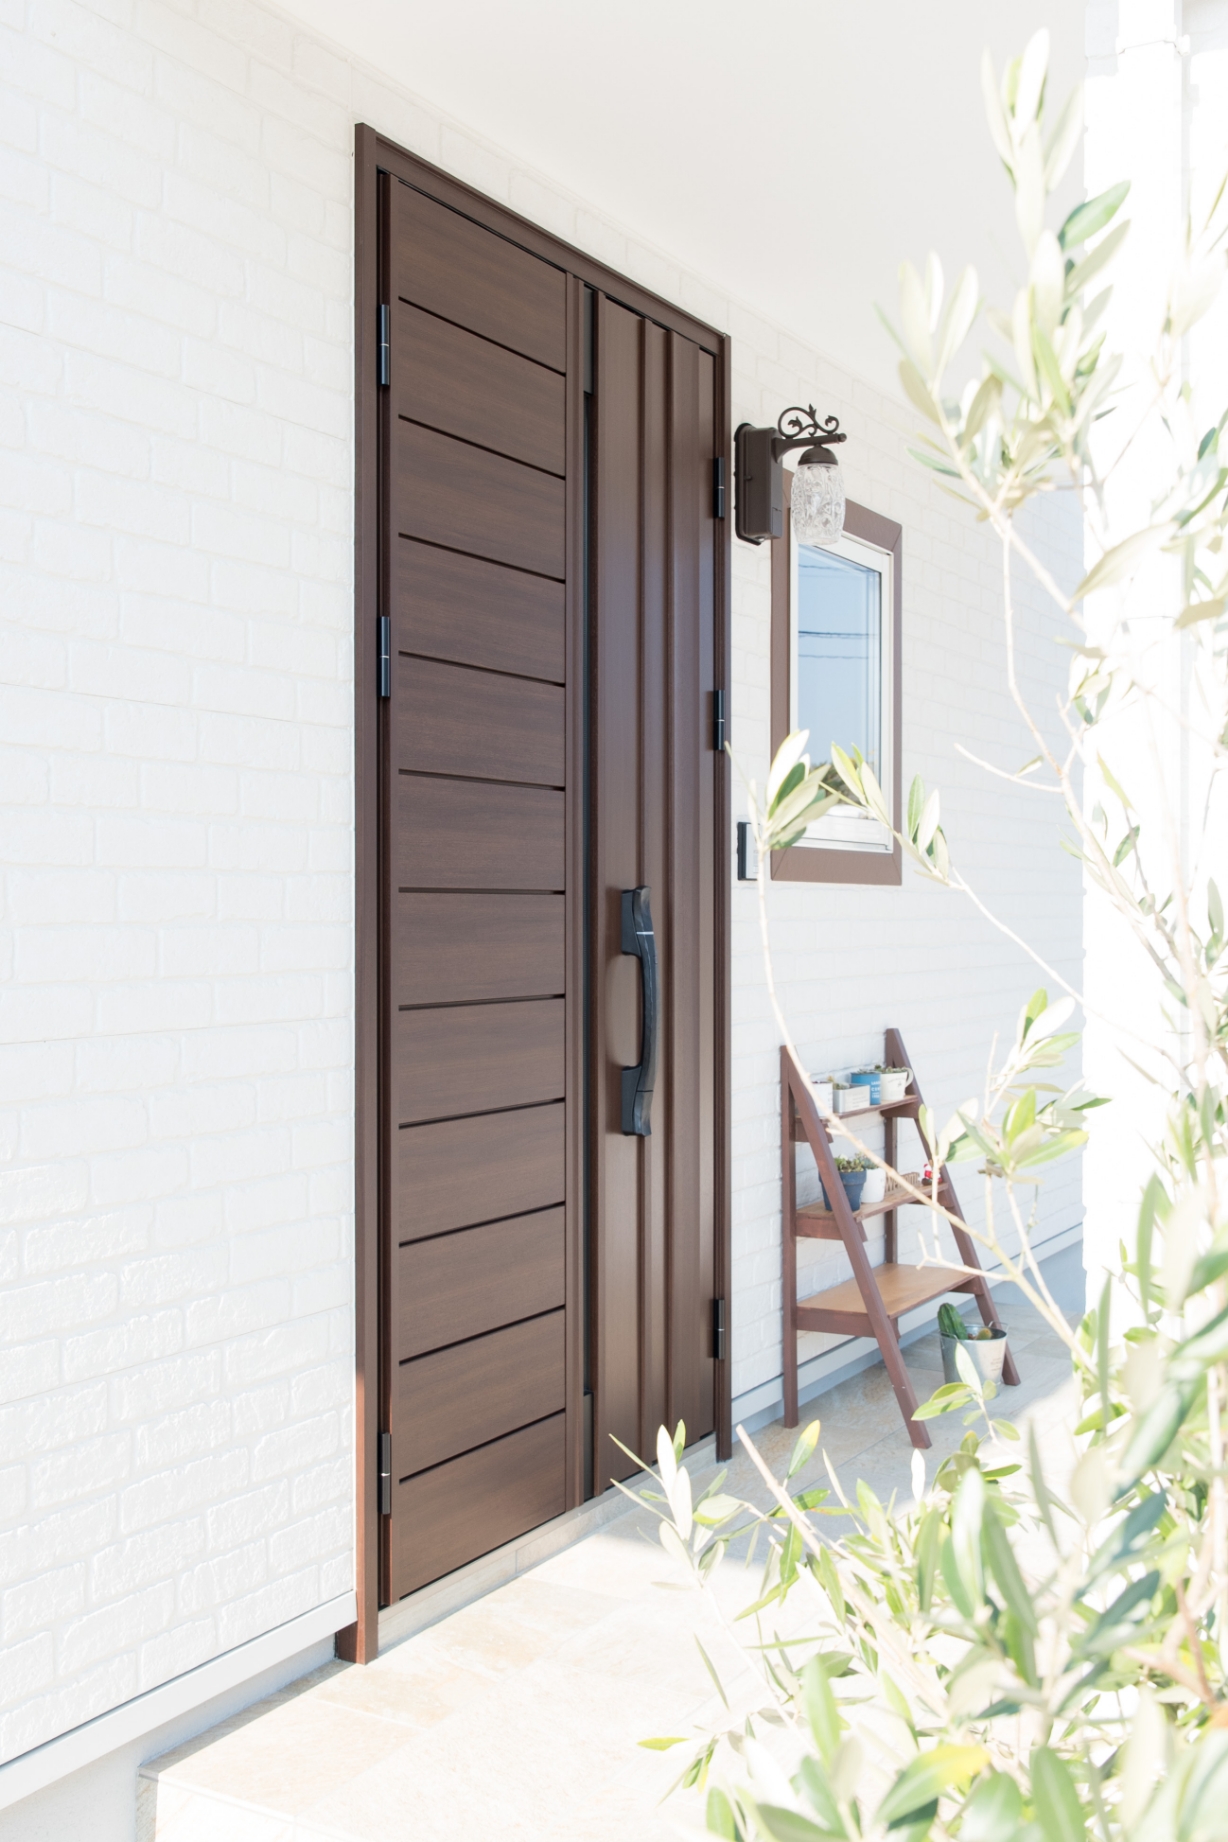 【玄関扉】YKKapのヴェナート親子ドアを採用。ショコラウォールナット色で外観ともマッチしています。玄関扉は、電気錠を搭載し、防犯対策も抜群です。